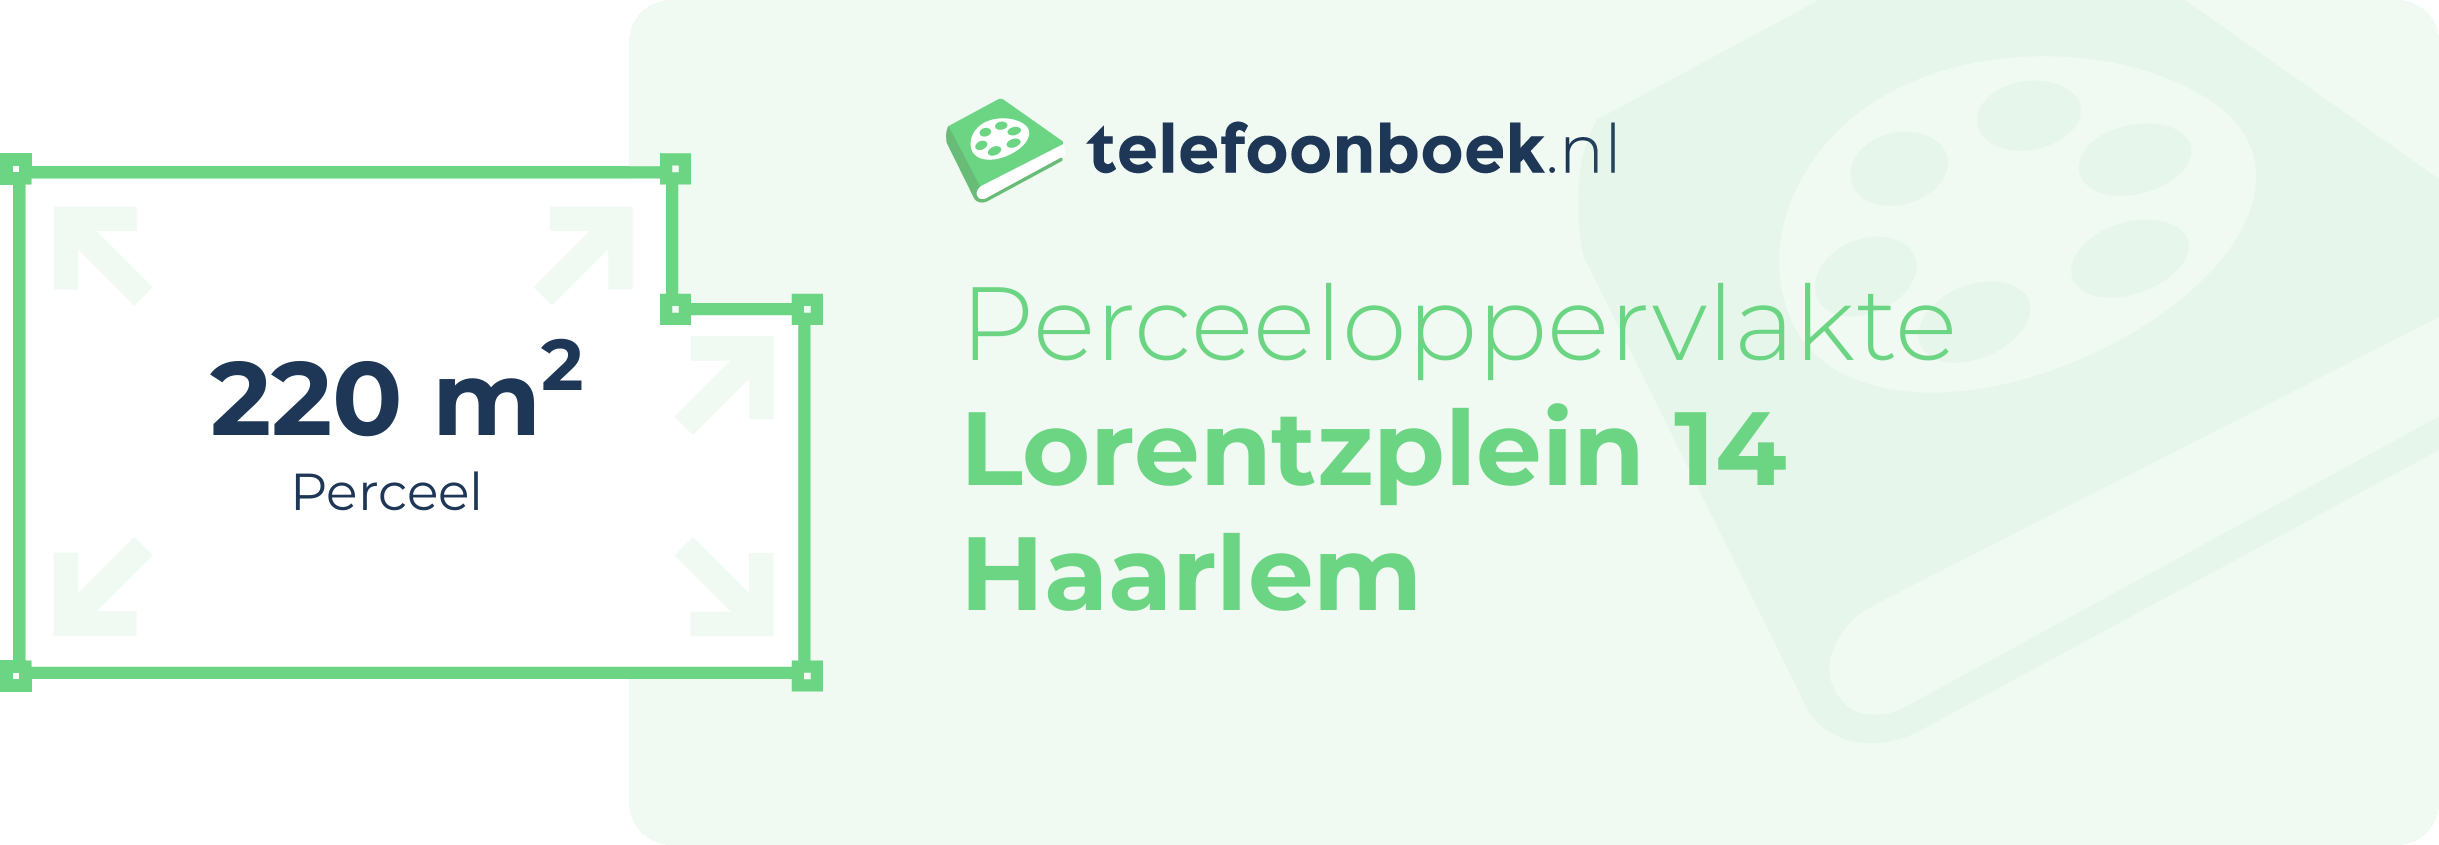 Perceeloppervlakte Lorentzplein 14 Haarlem